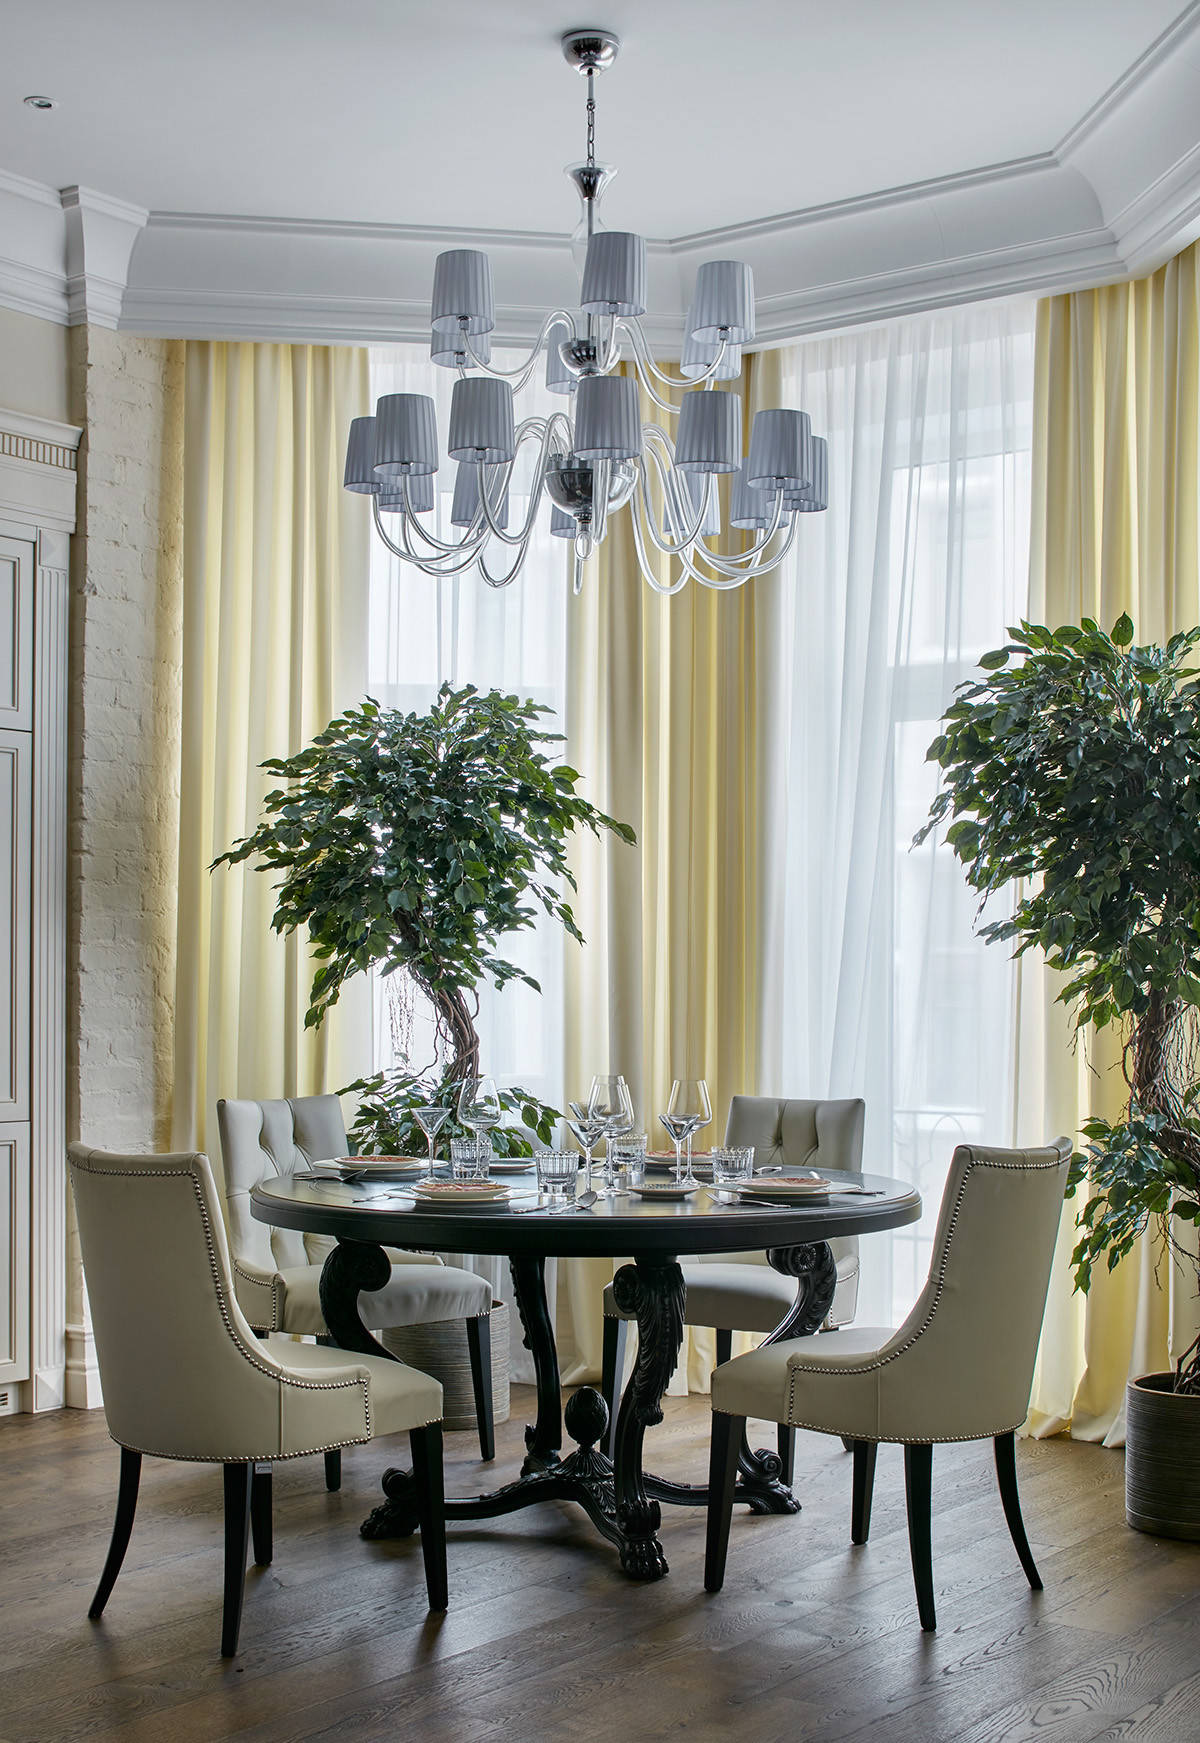 Примеры дизайна интерьера для гостиных в различных стилях, фото реализованных проектов для гостиной